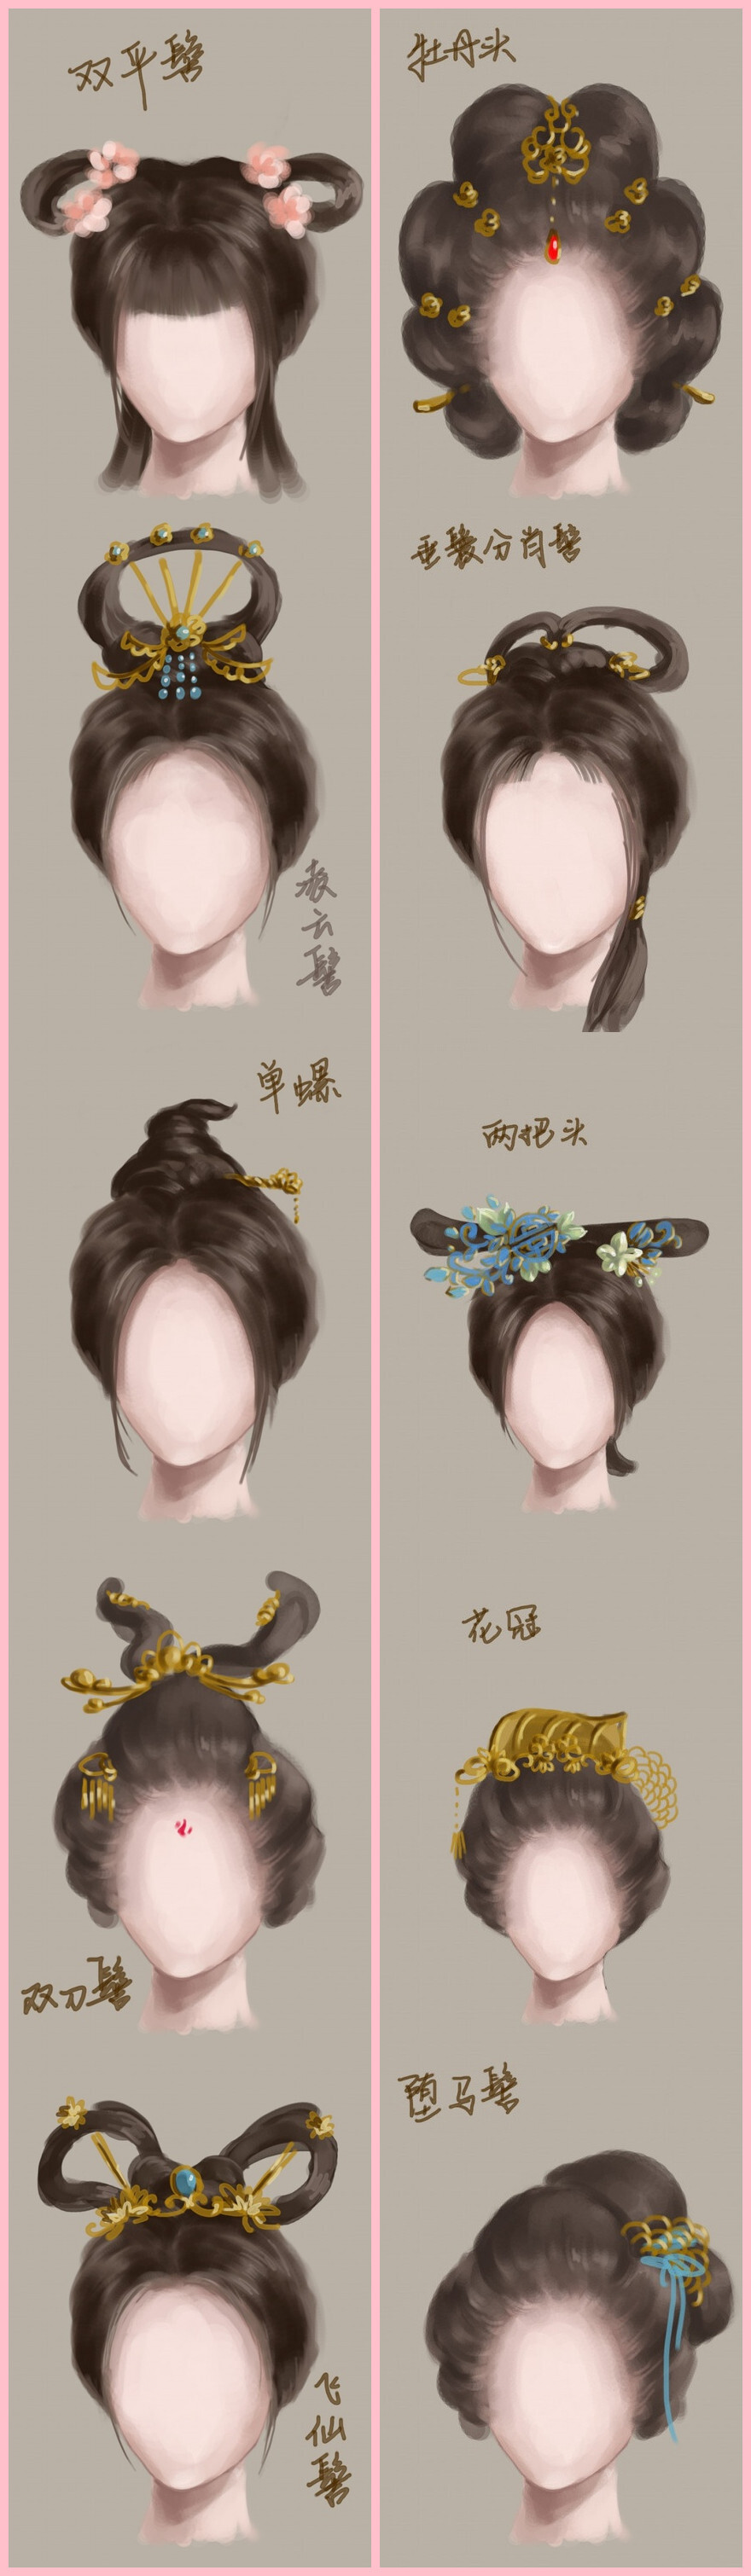 华美别致图解中国古代女子发型1